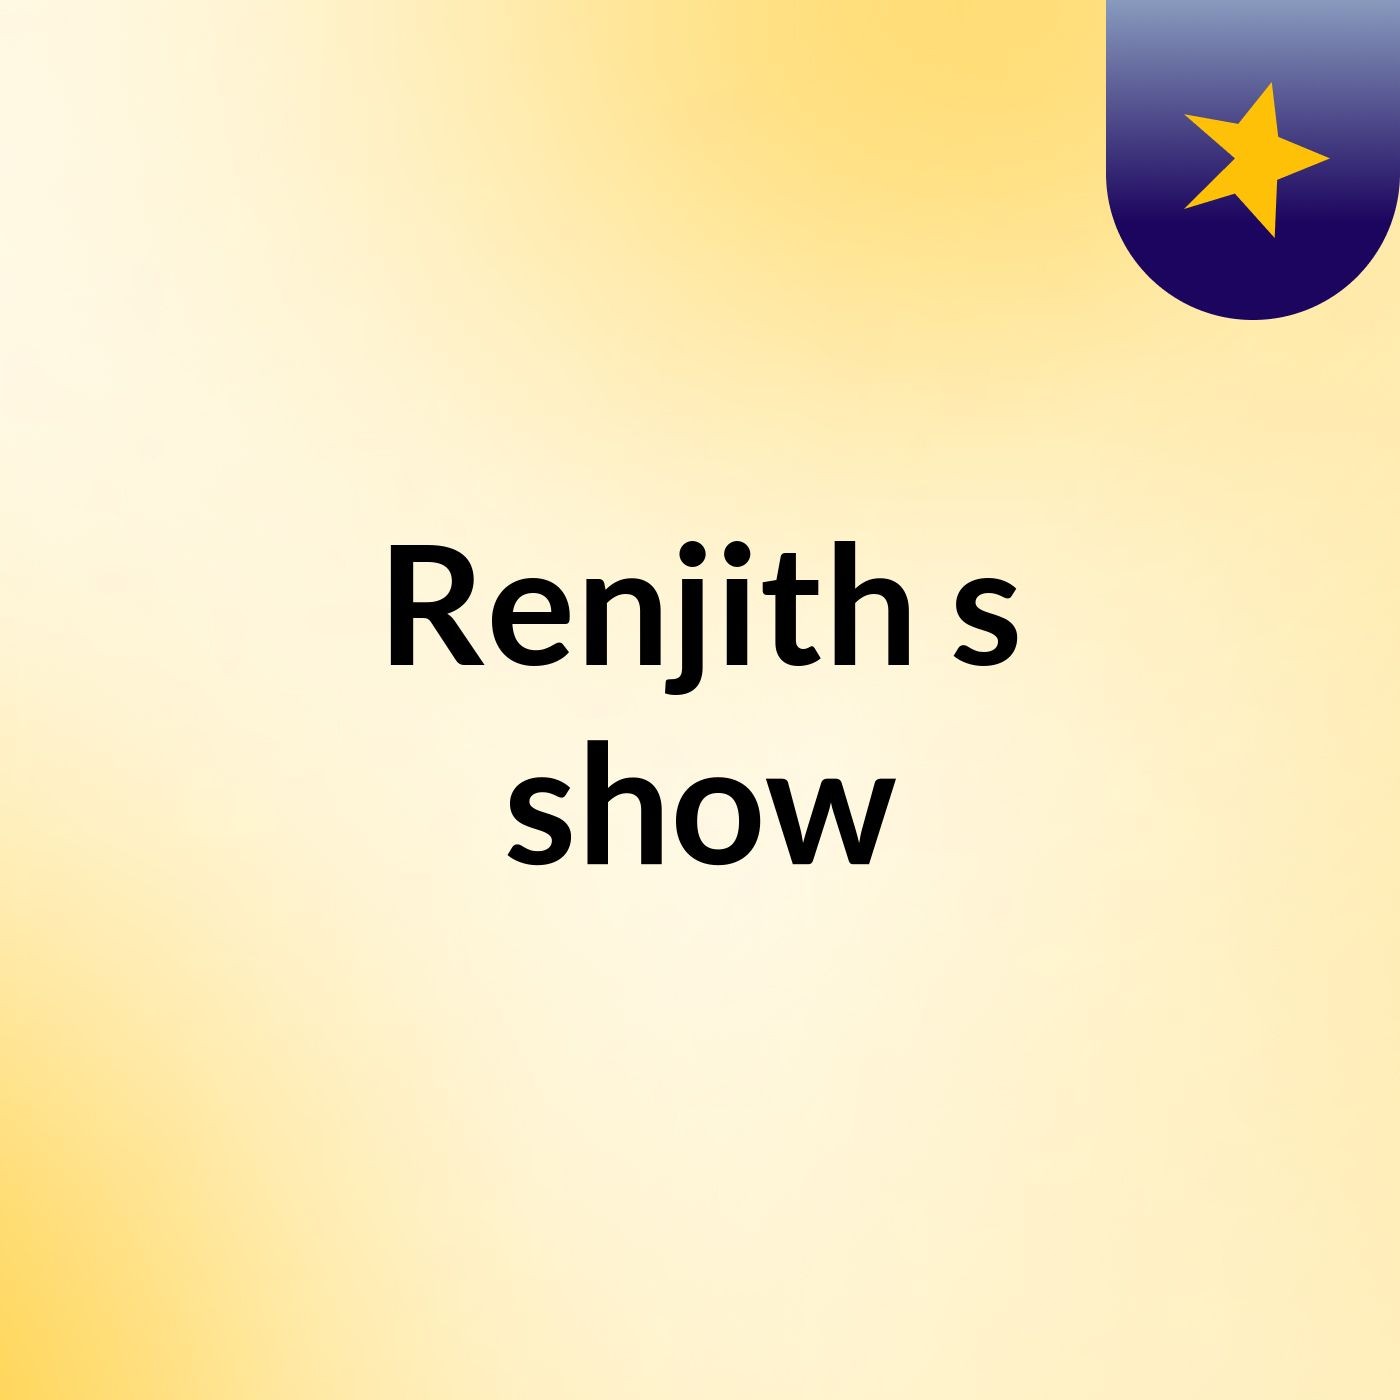 Renjith's show